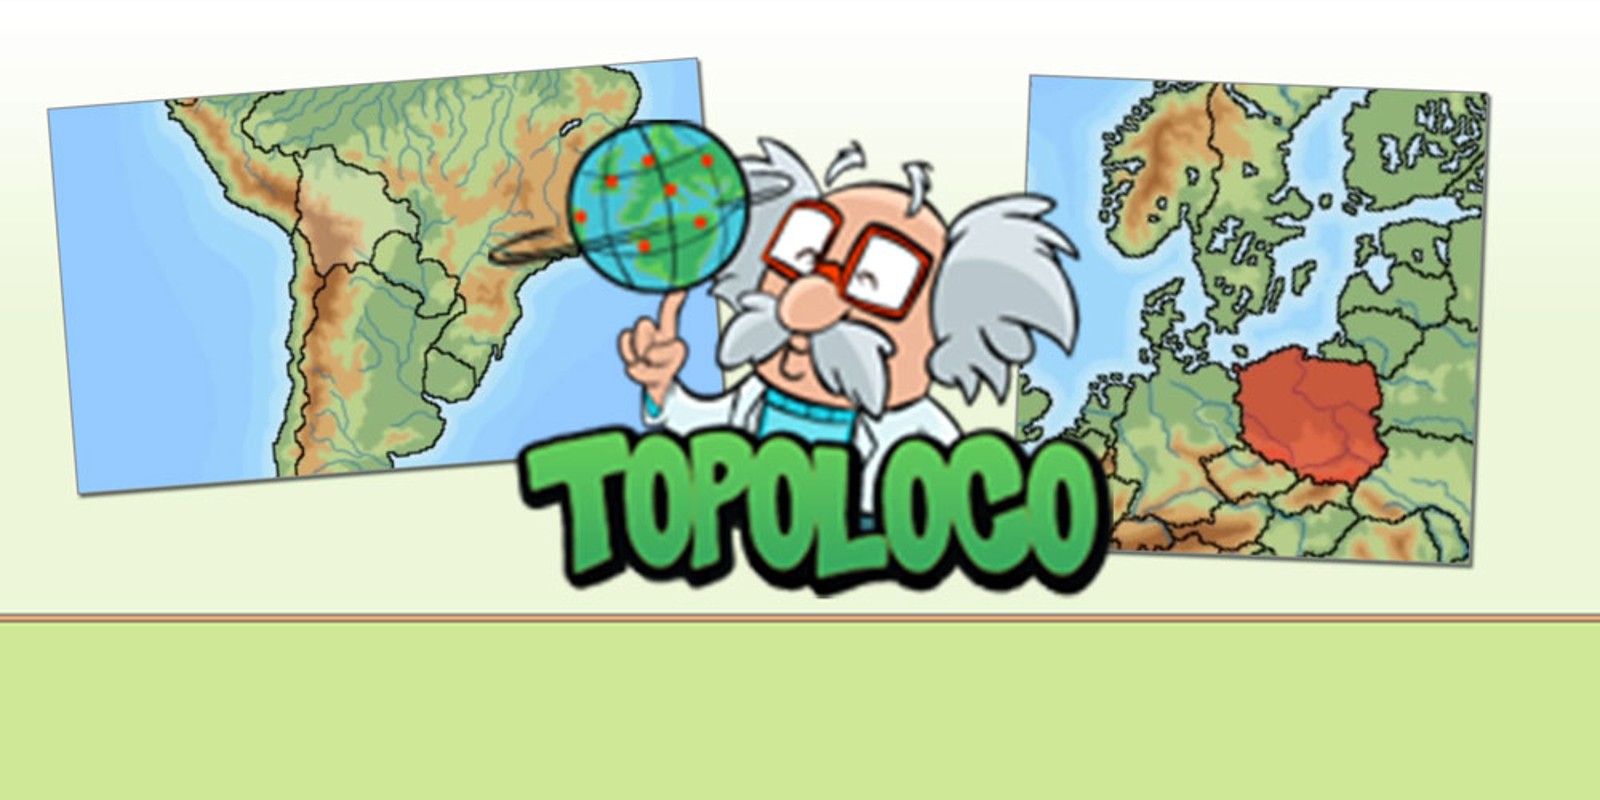 Topoloco - loco por la topografía